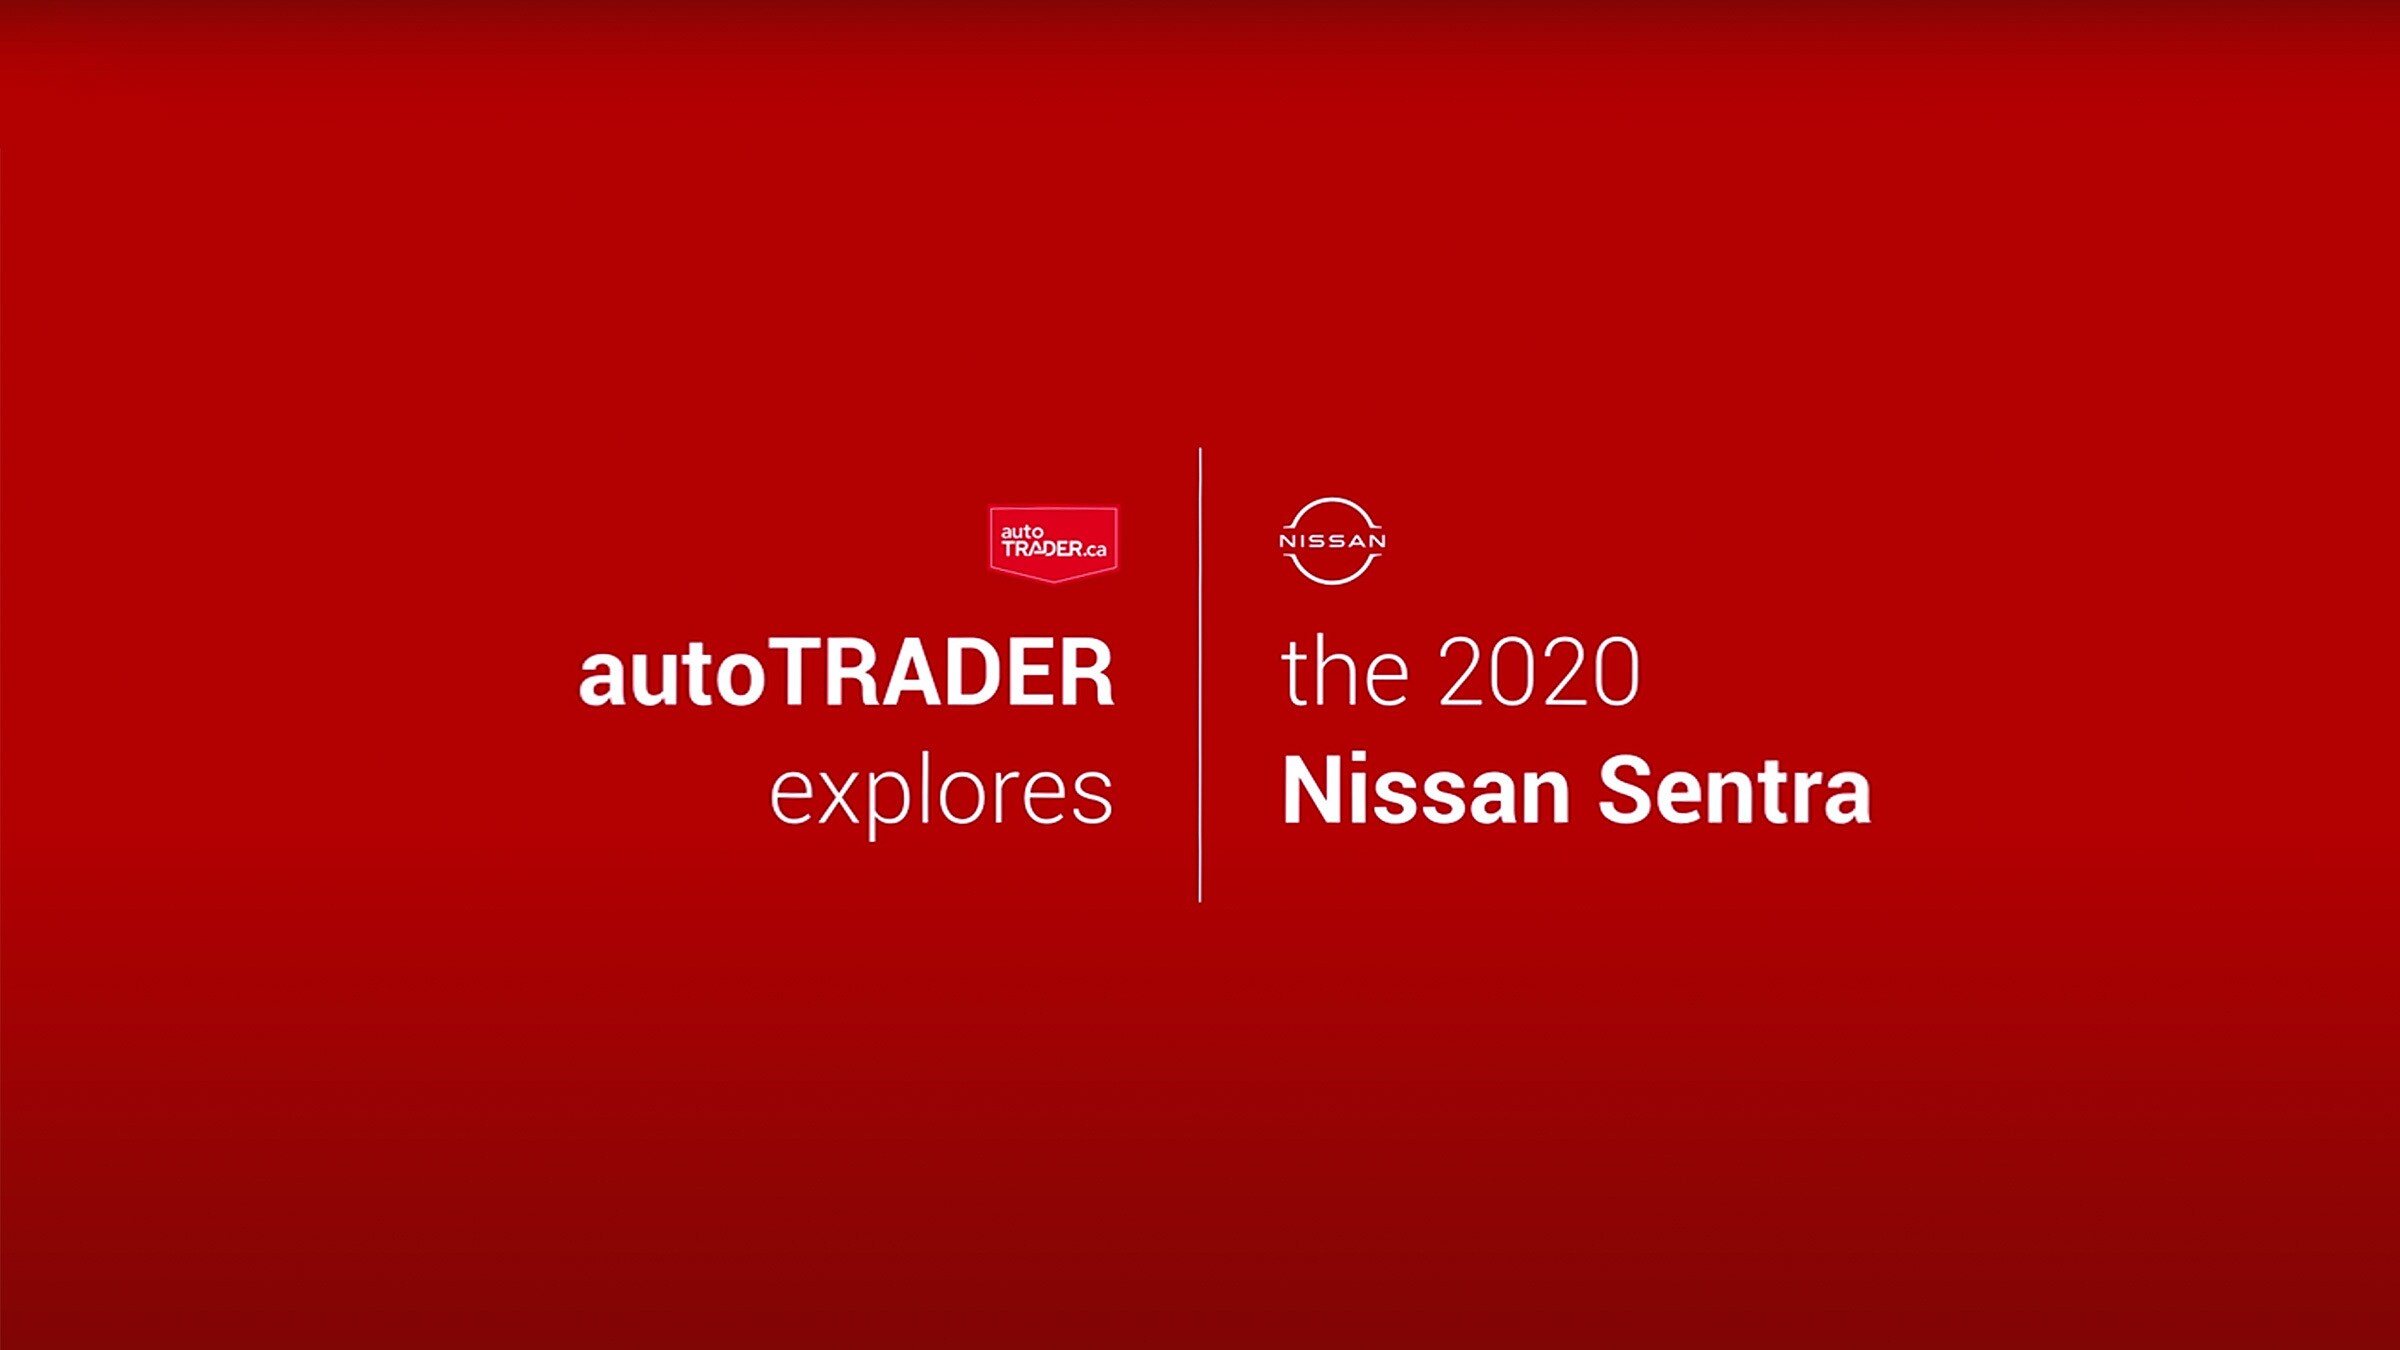 Nissan Sentra Industry Insights video